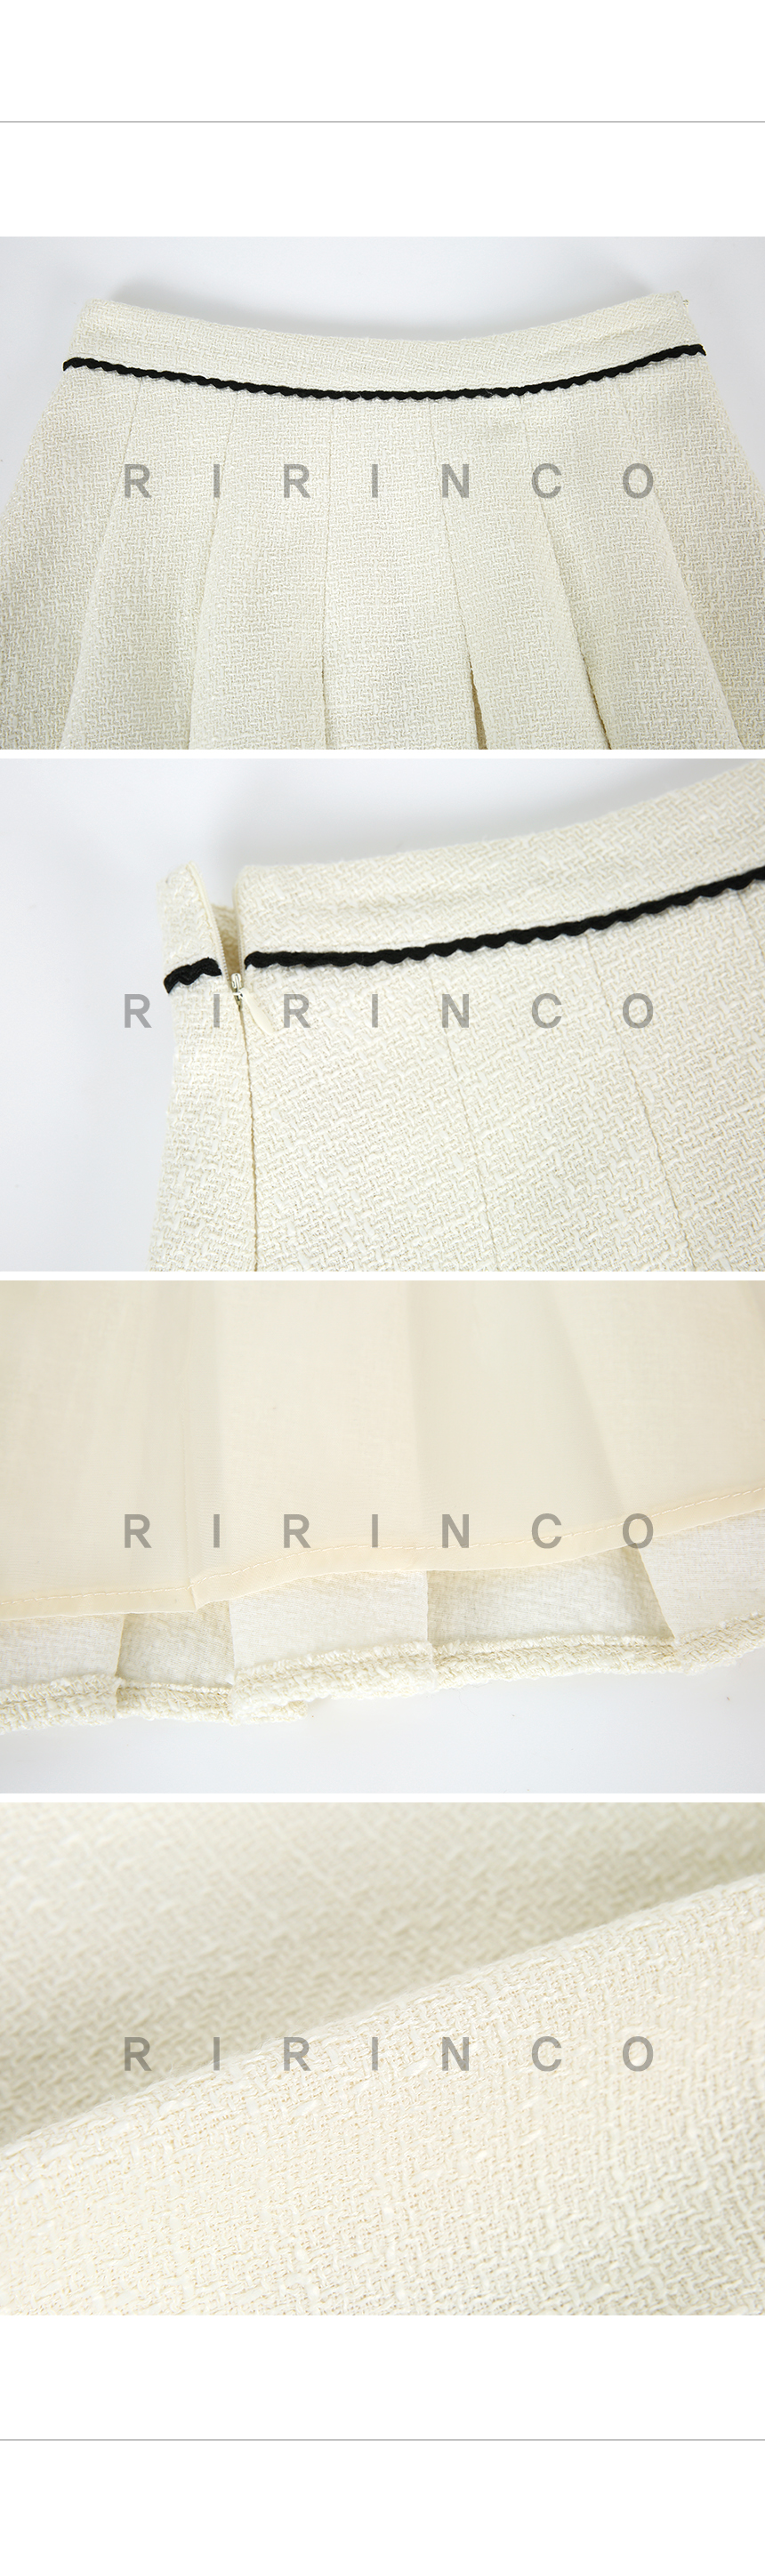 RIRINCO ツイードプリーツツーピースミニスカート